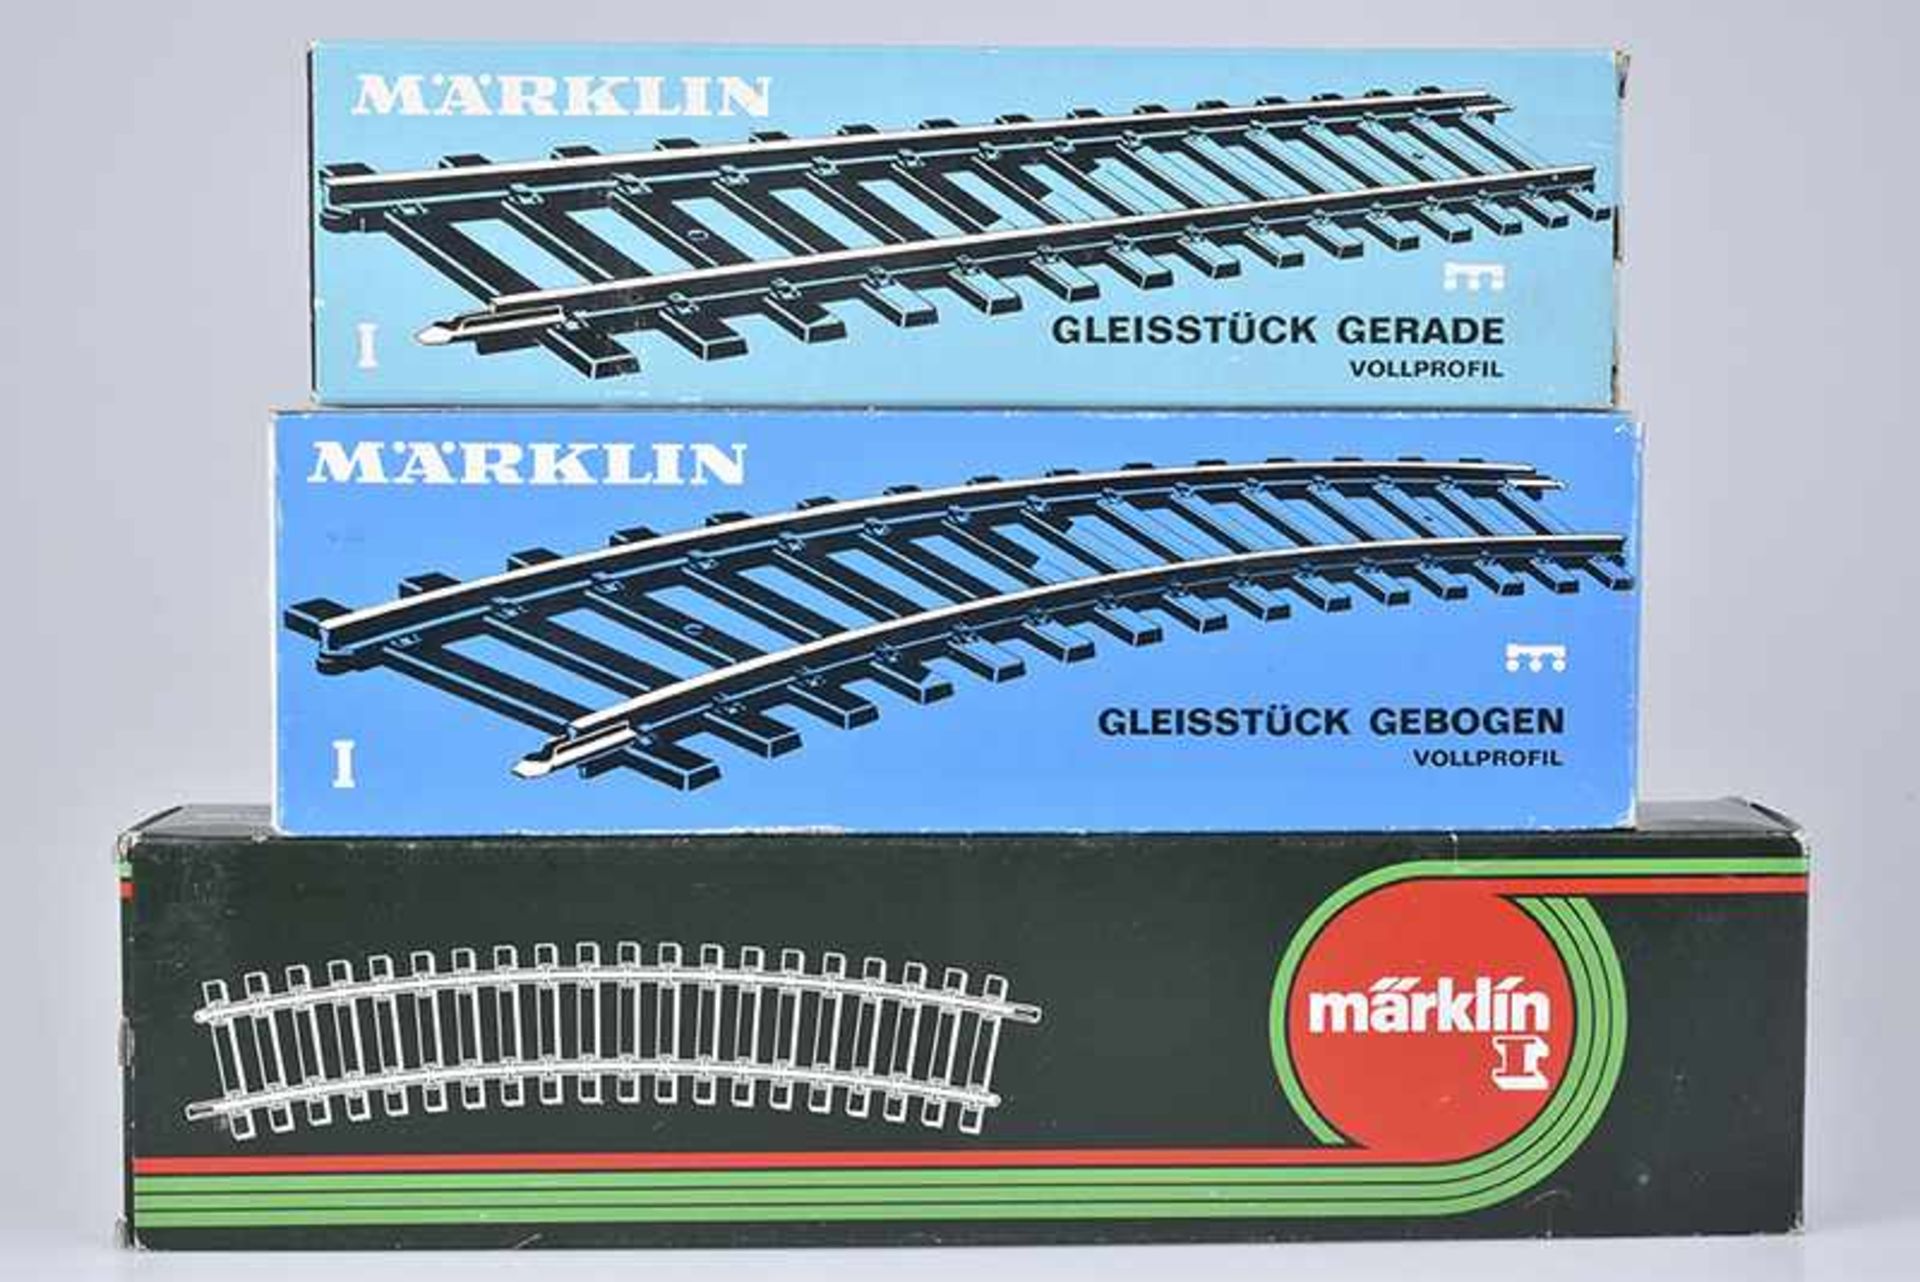 MÄRKLIN Gleiskonv. S1, 30 Gleise, 10 x gebogene Gleise 5921, 10x gerade Gleise 5900 und 10x gebogene